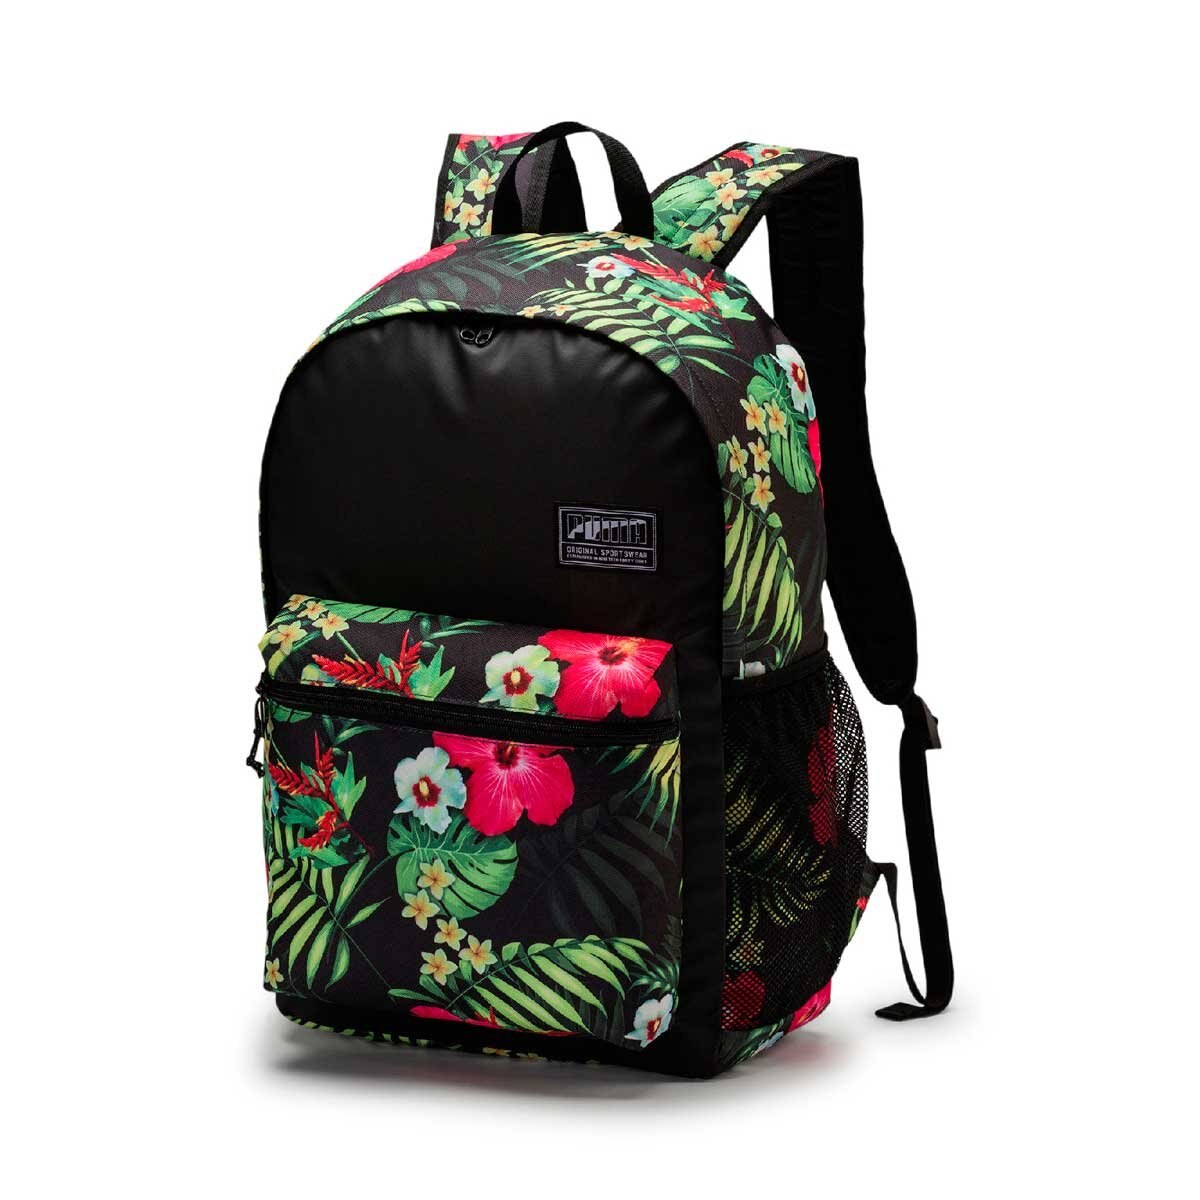 Mochila negra academy backpack puma - Sears